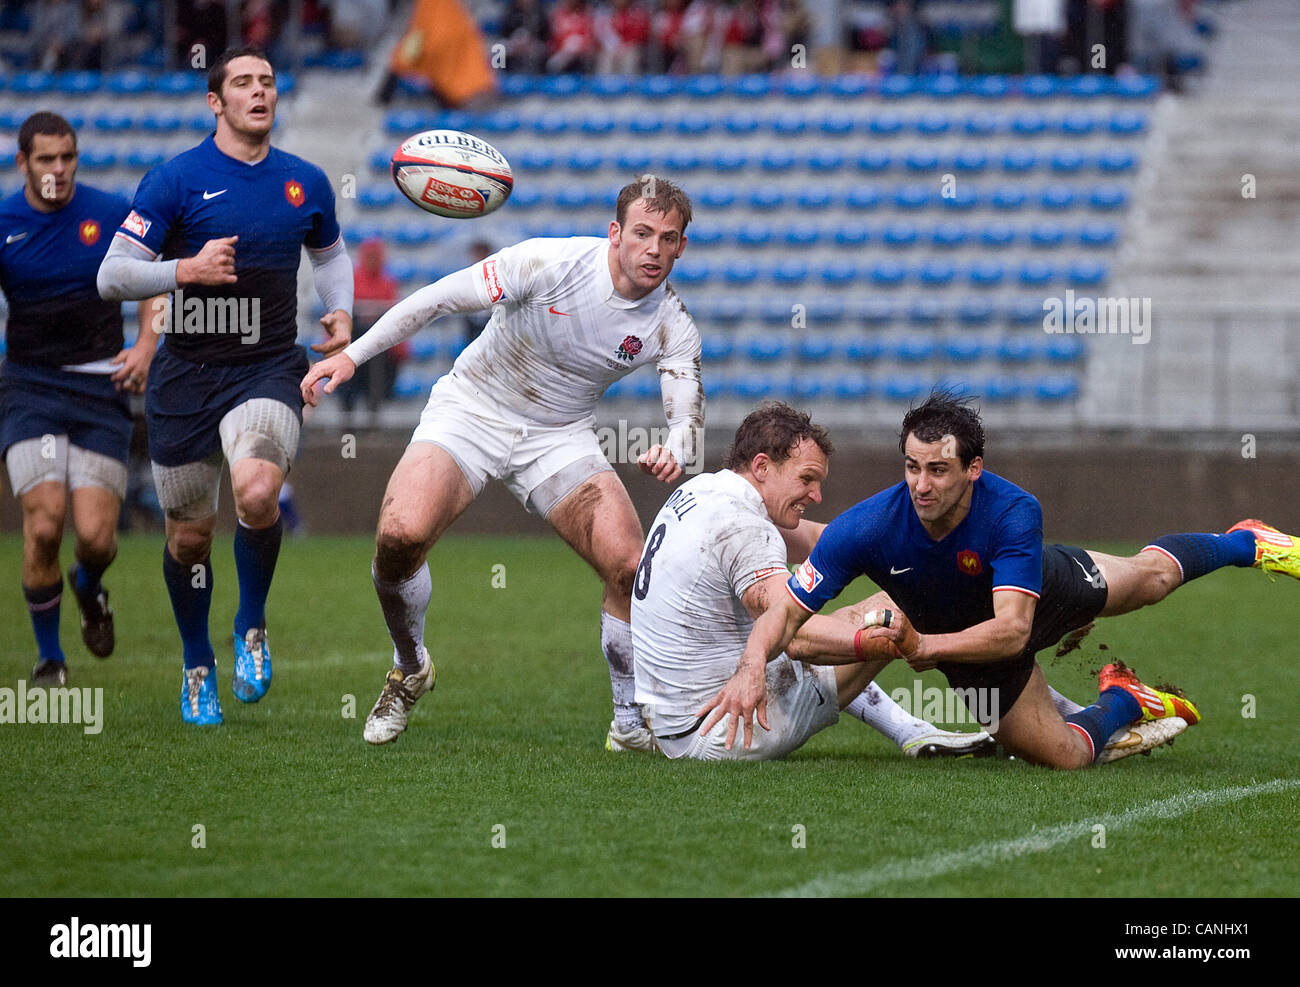 Aktion von Englands Match mit Frankreich in Runde 7 von 7 s Rugby-Weltmeisterschaft in Tokio am 31. März 2012. England gewann 19-7.  Fotograf: Robert Gilhooly Stockfoto